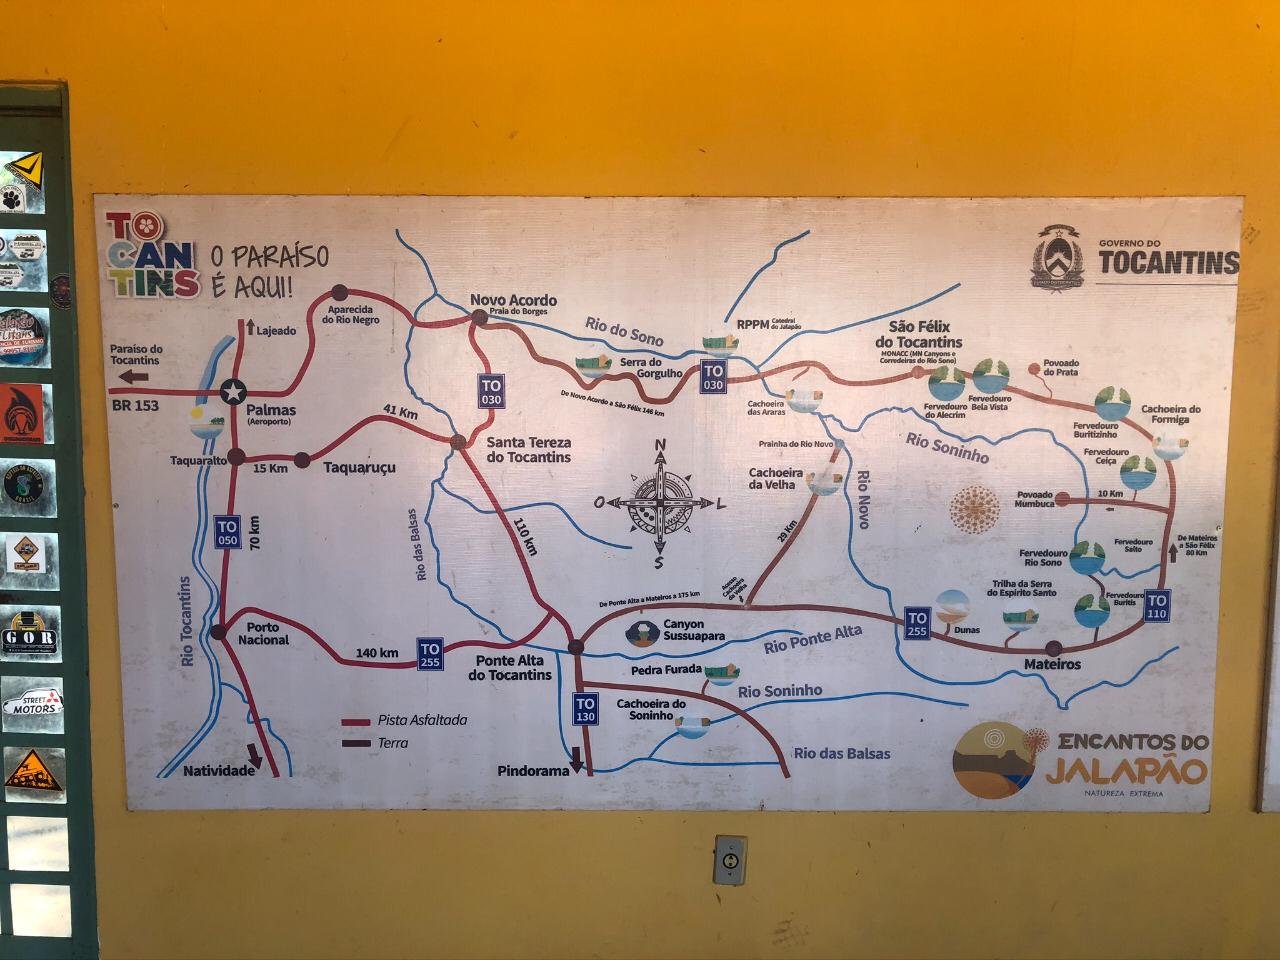 Mapa com Informações sobre os Encantos do Jalapão